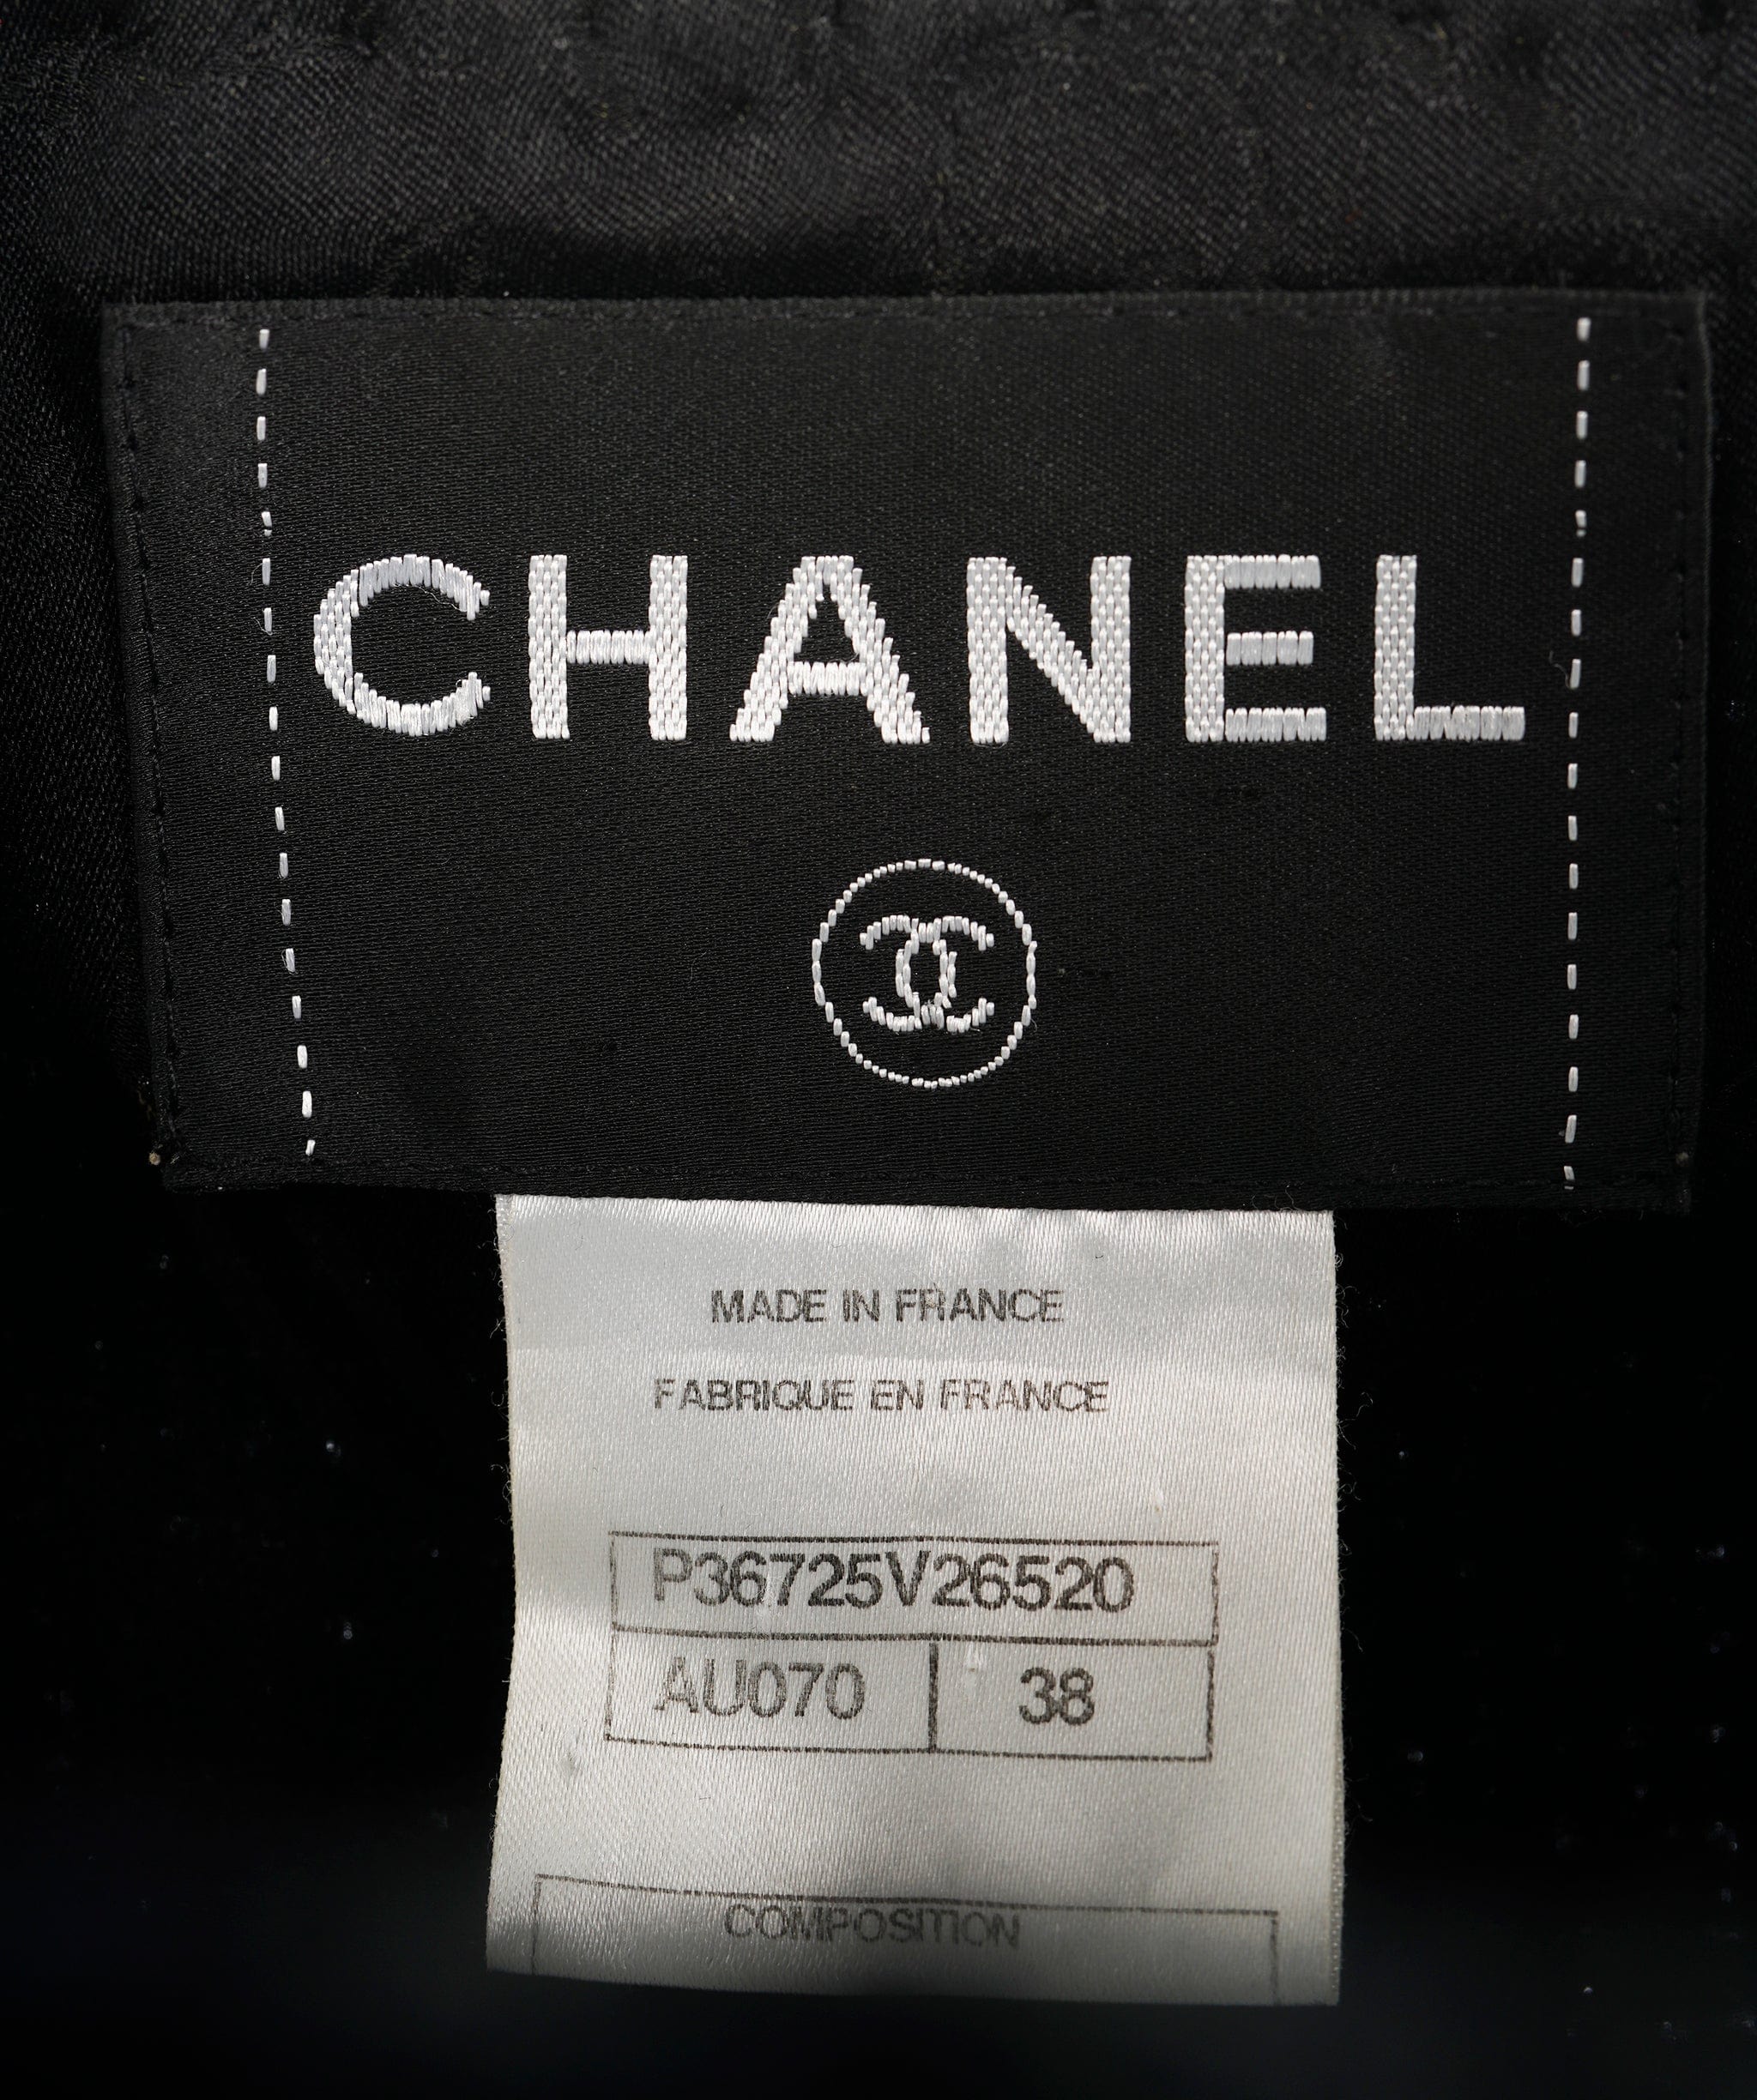 Chanel Veste Chanel noire grise boutons lion FR38 P36725V26520 ALC1205